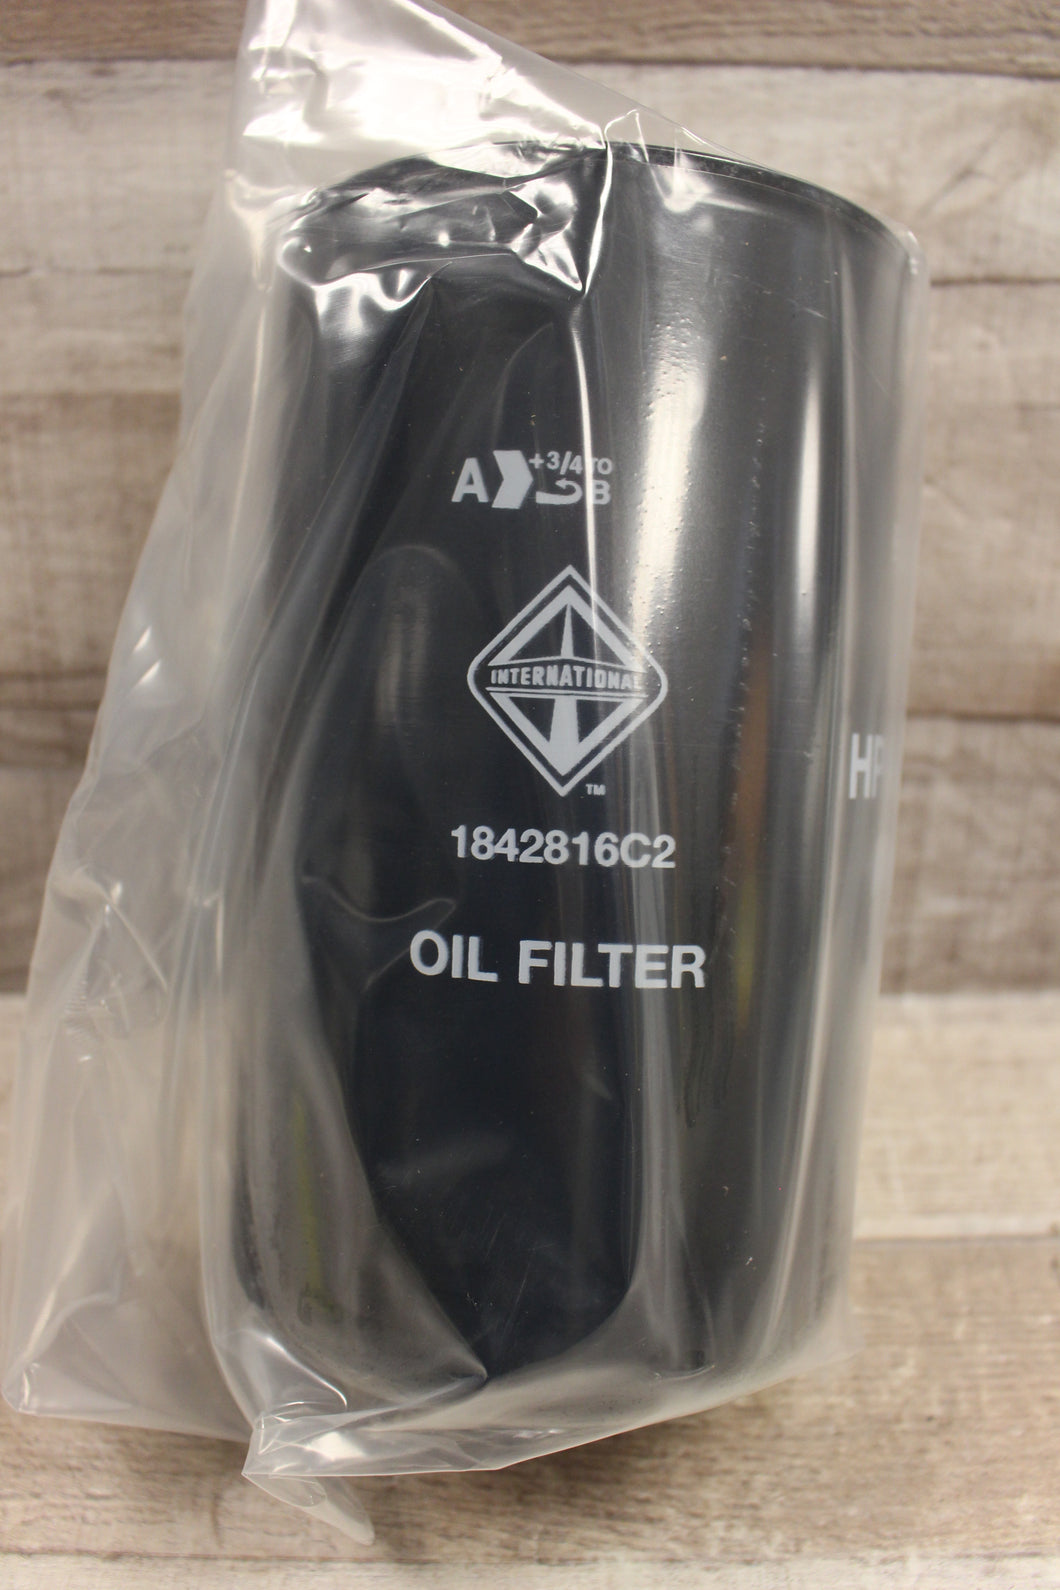 International Oil Filter for MRAP - 1842816C2 - 57799 - 2910-01-555-5093 - New